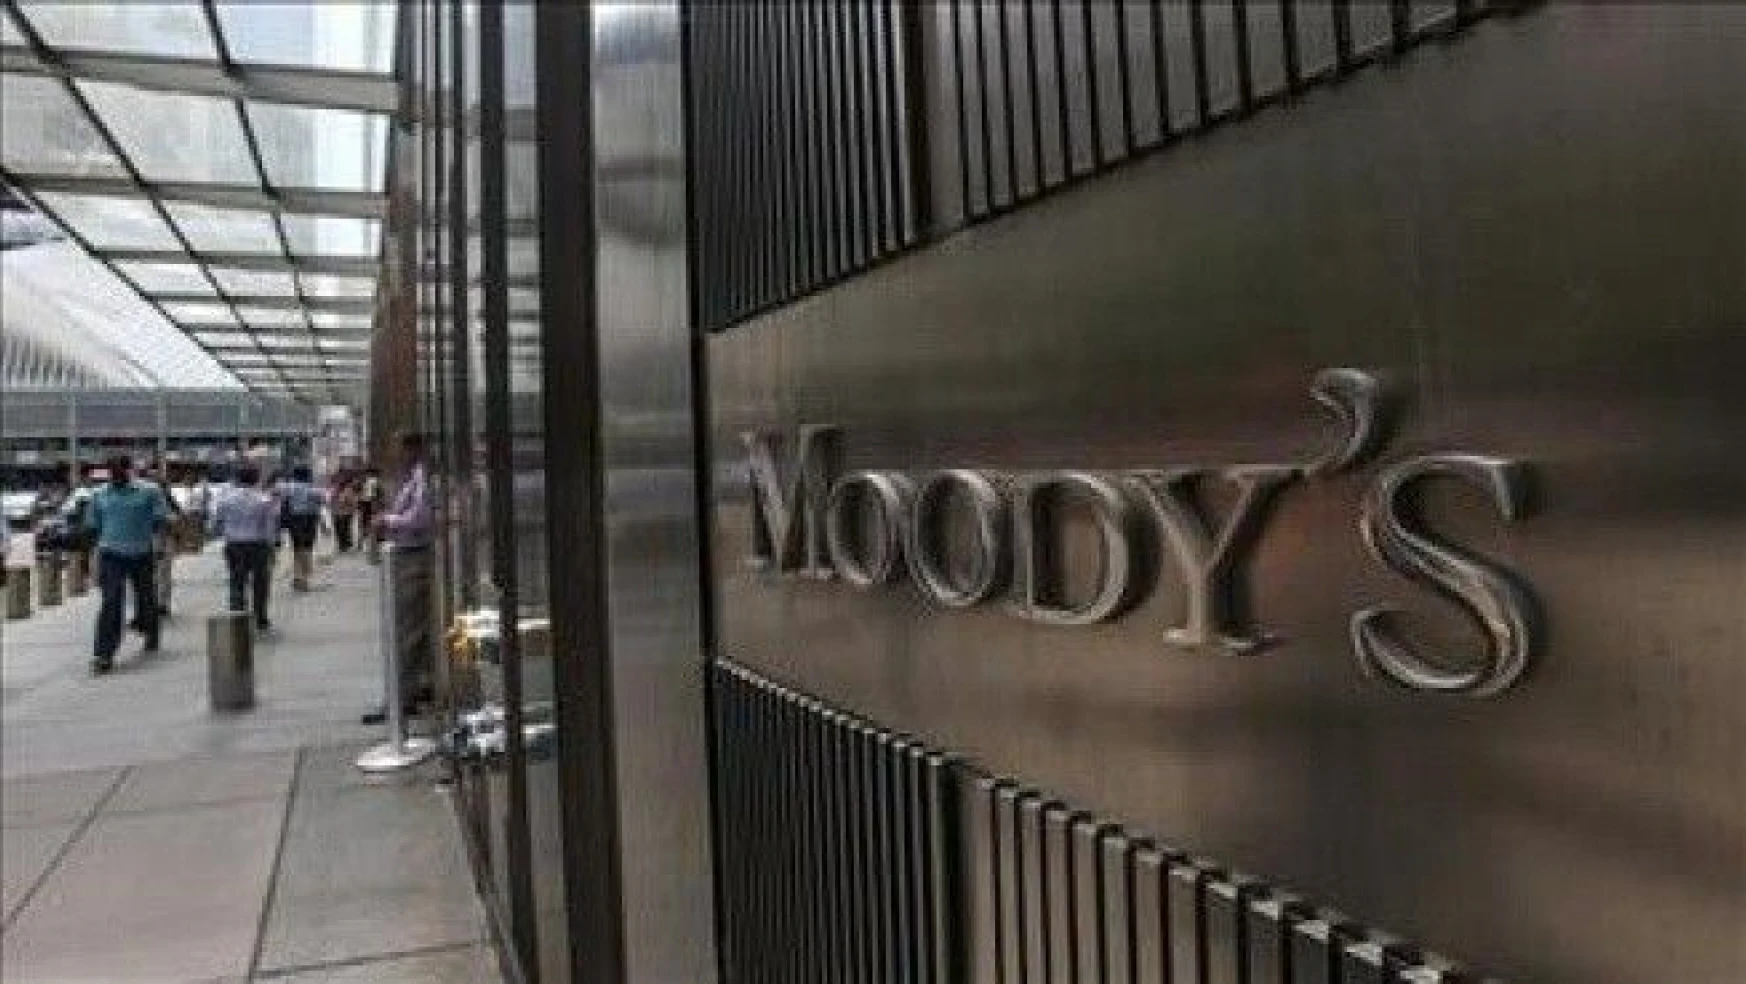 Moody's Türkiye'nin kredi notunu korudu